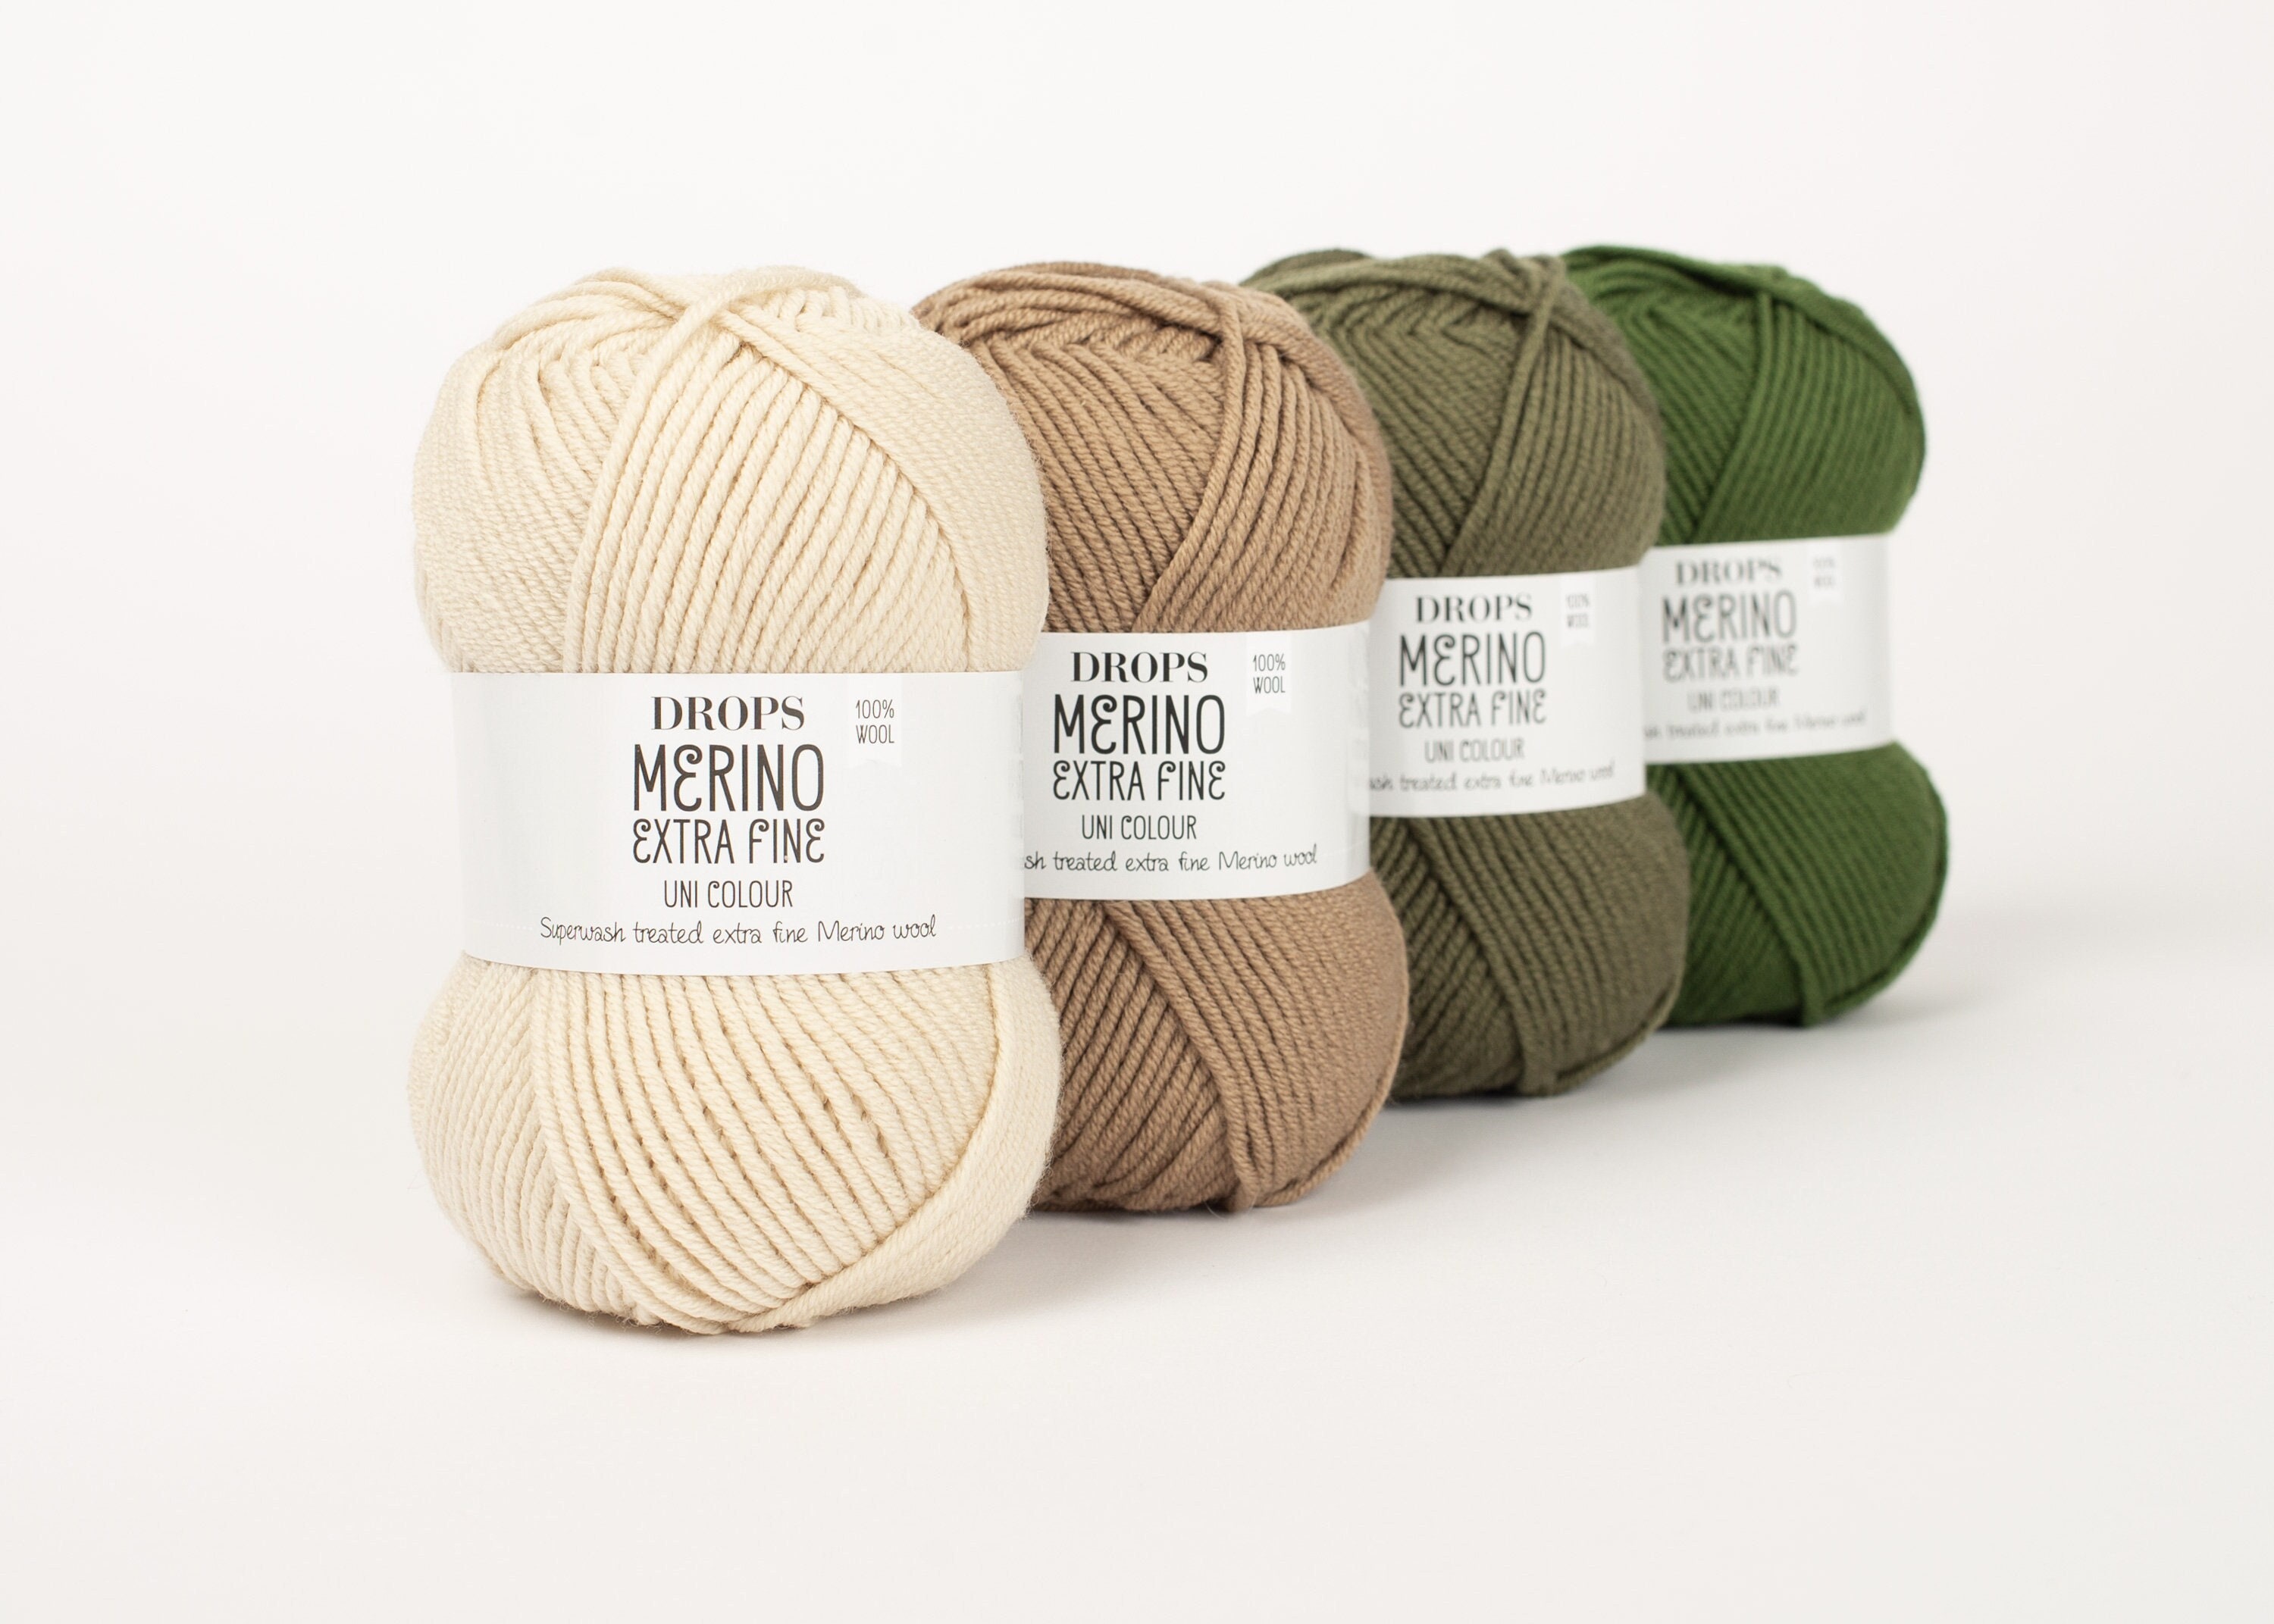 DK Superwash Merino Wool Knitting Yarn DROPS Merino Extra Fine Worsted  Weight Yarn 